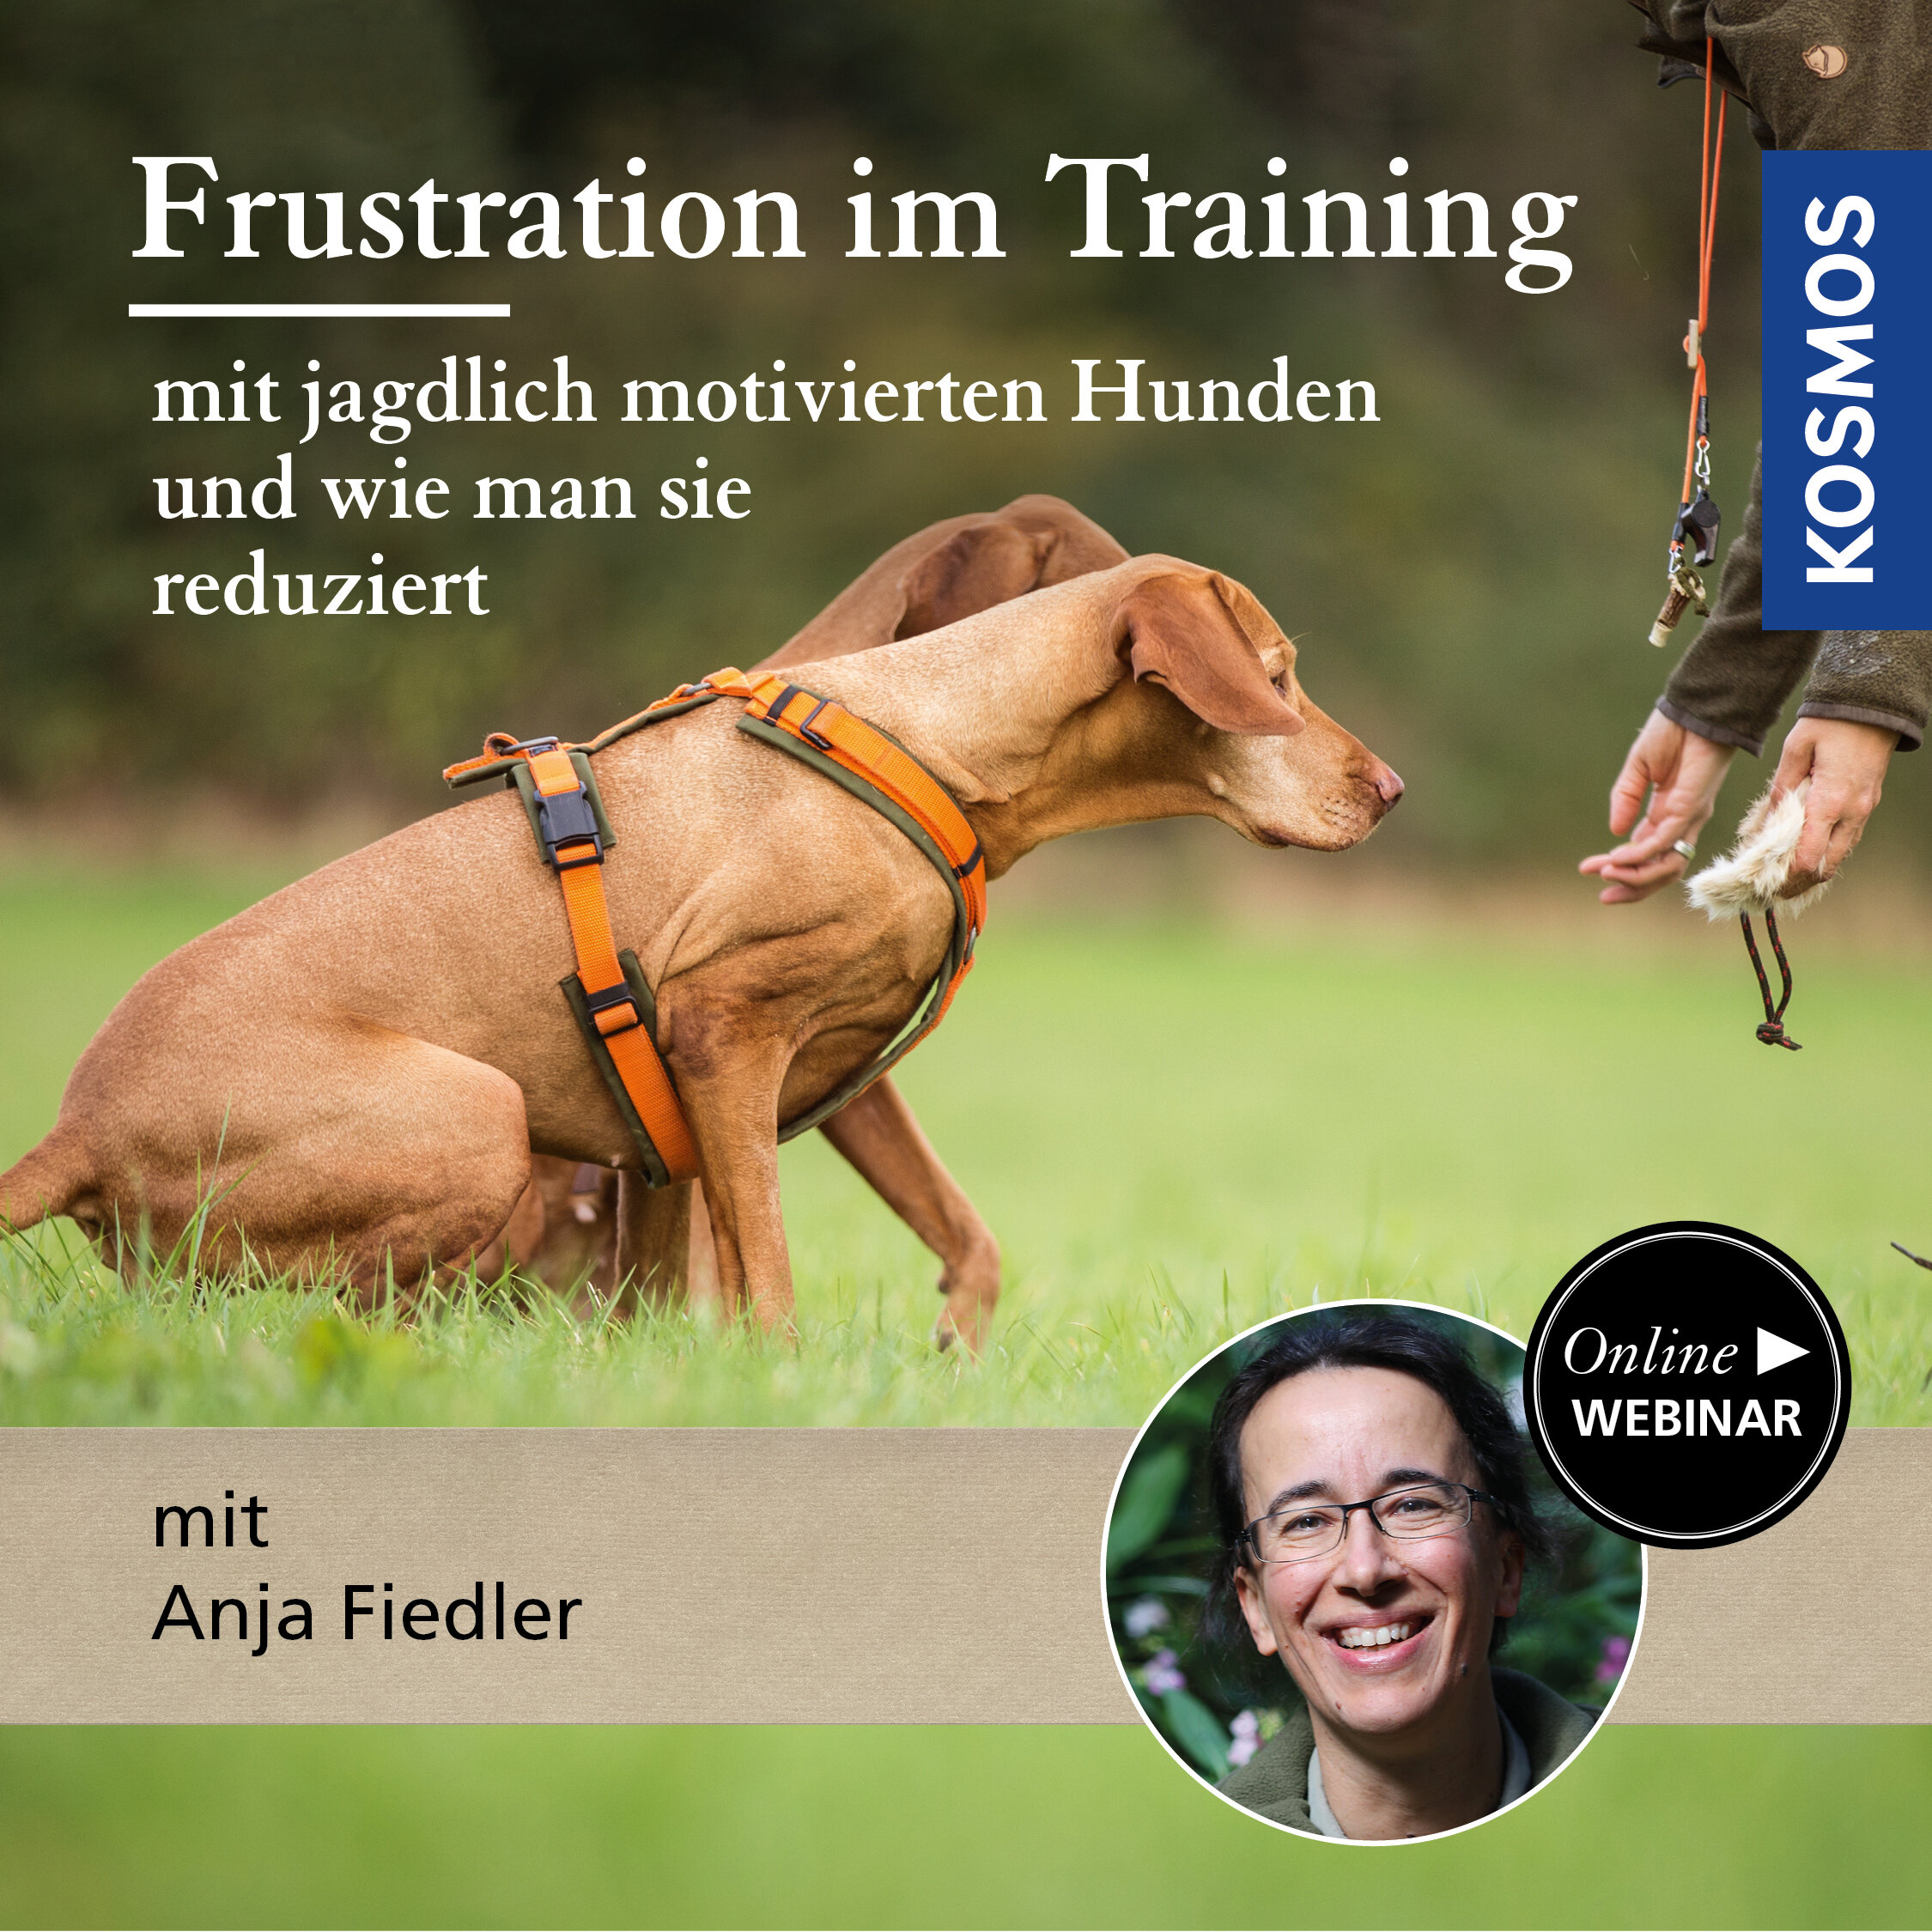 Frustration im Training mit jagdlich motivierten Hunden und wie man sie reduziert